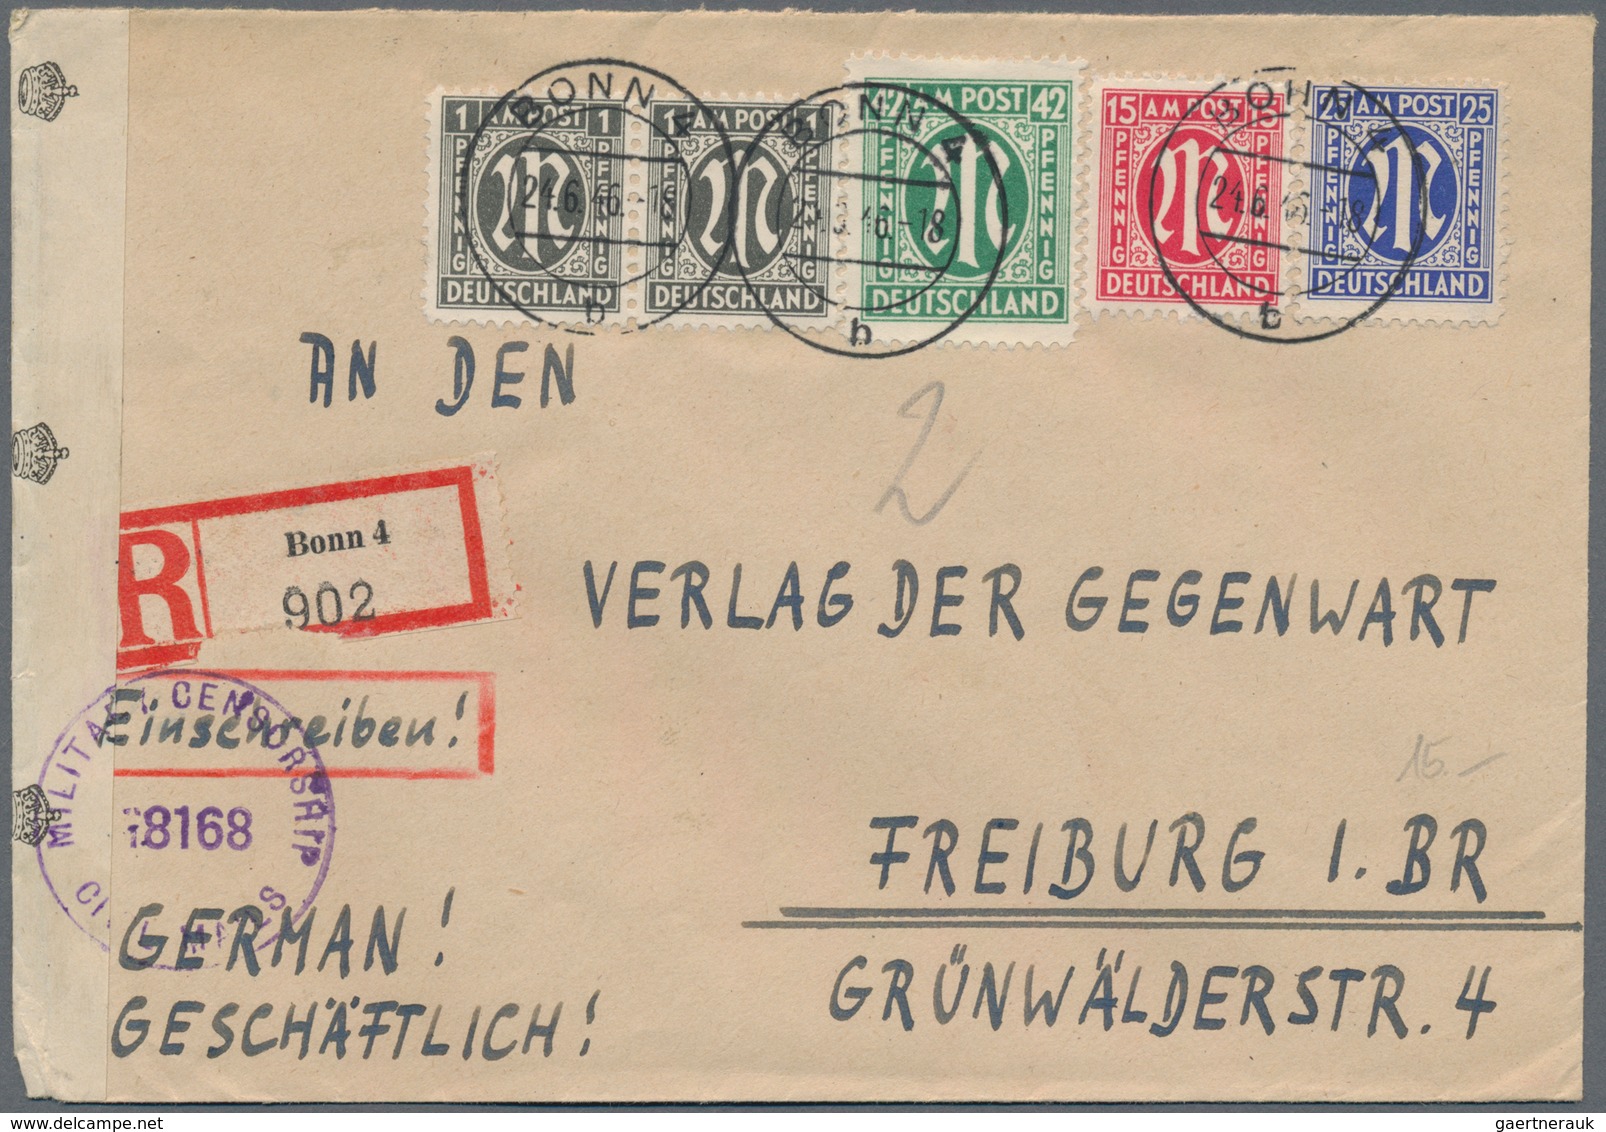 Zensurpost: 1945/1954, umfangreicher Sammlungsposten von über 170 Zensur-Belegen aus den Alliierten